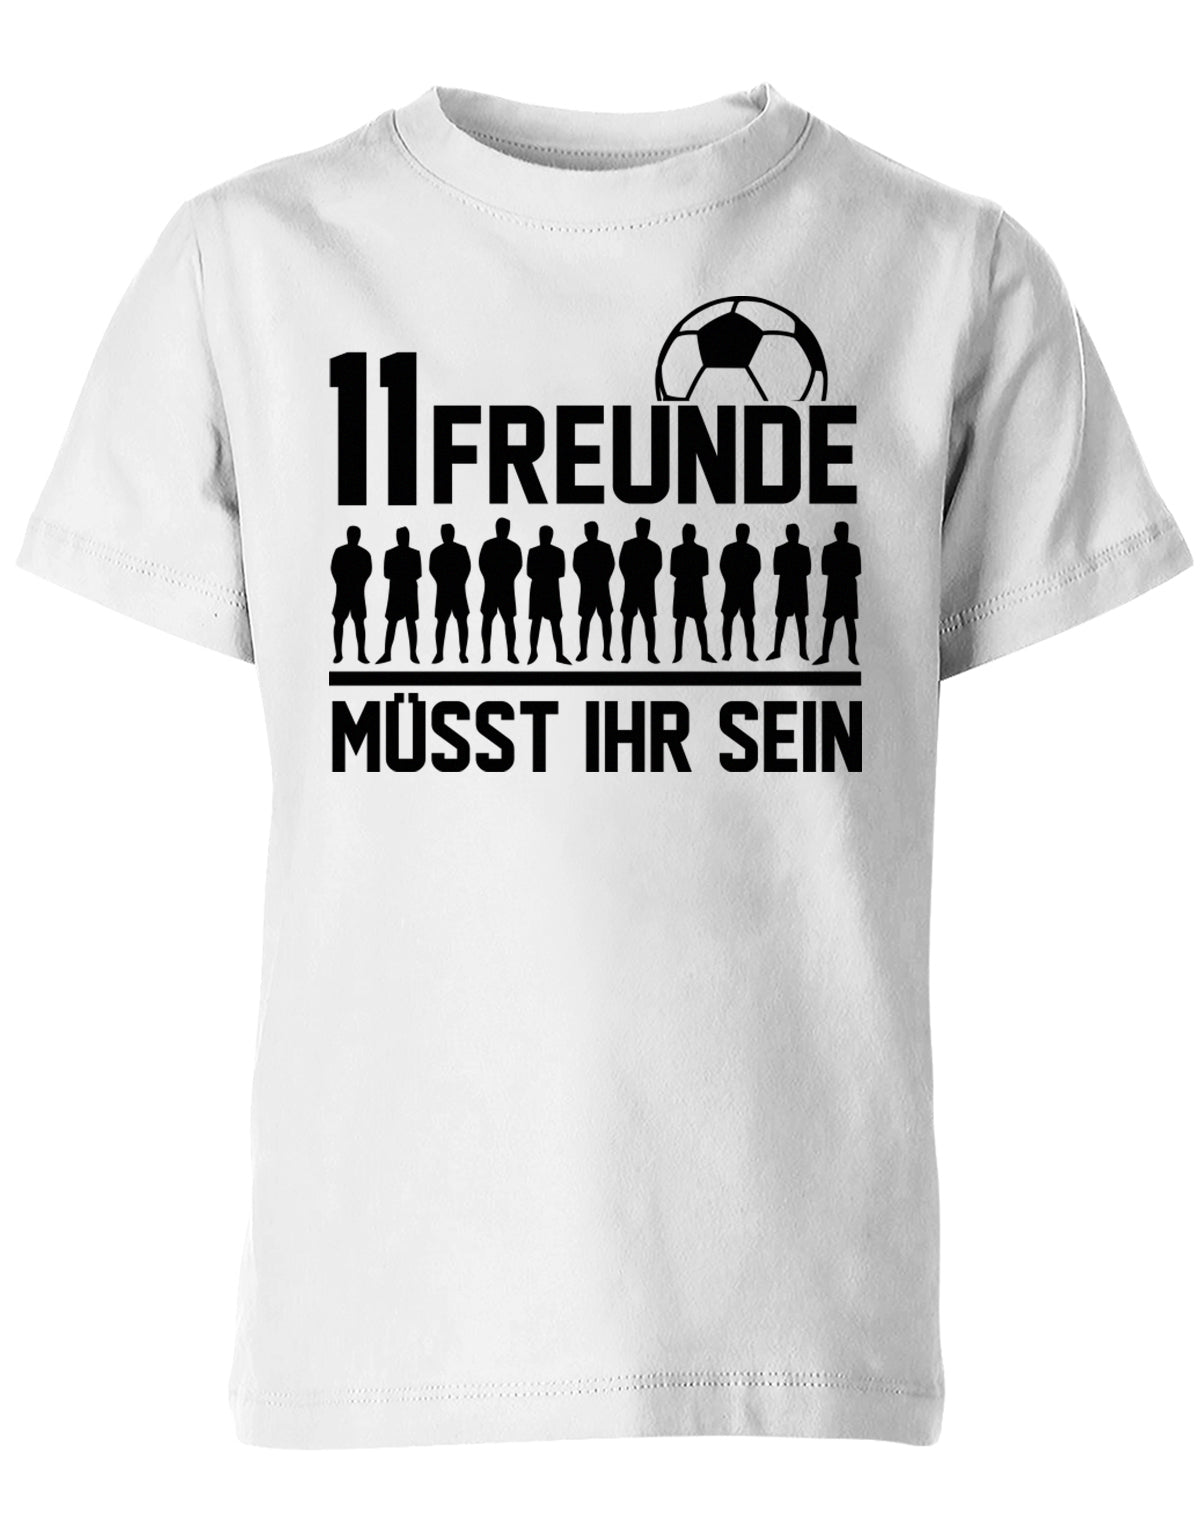 11 Freunde müsst ihr sein - Fußball - Kinder T-Shirt